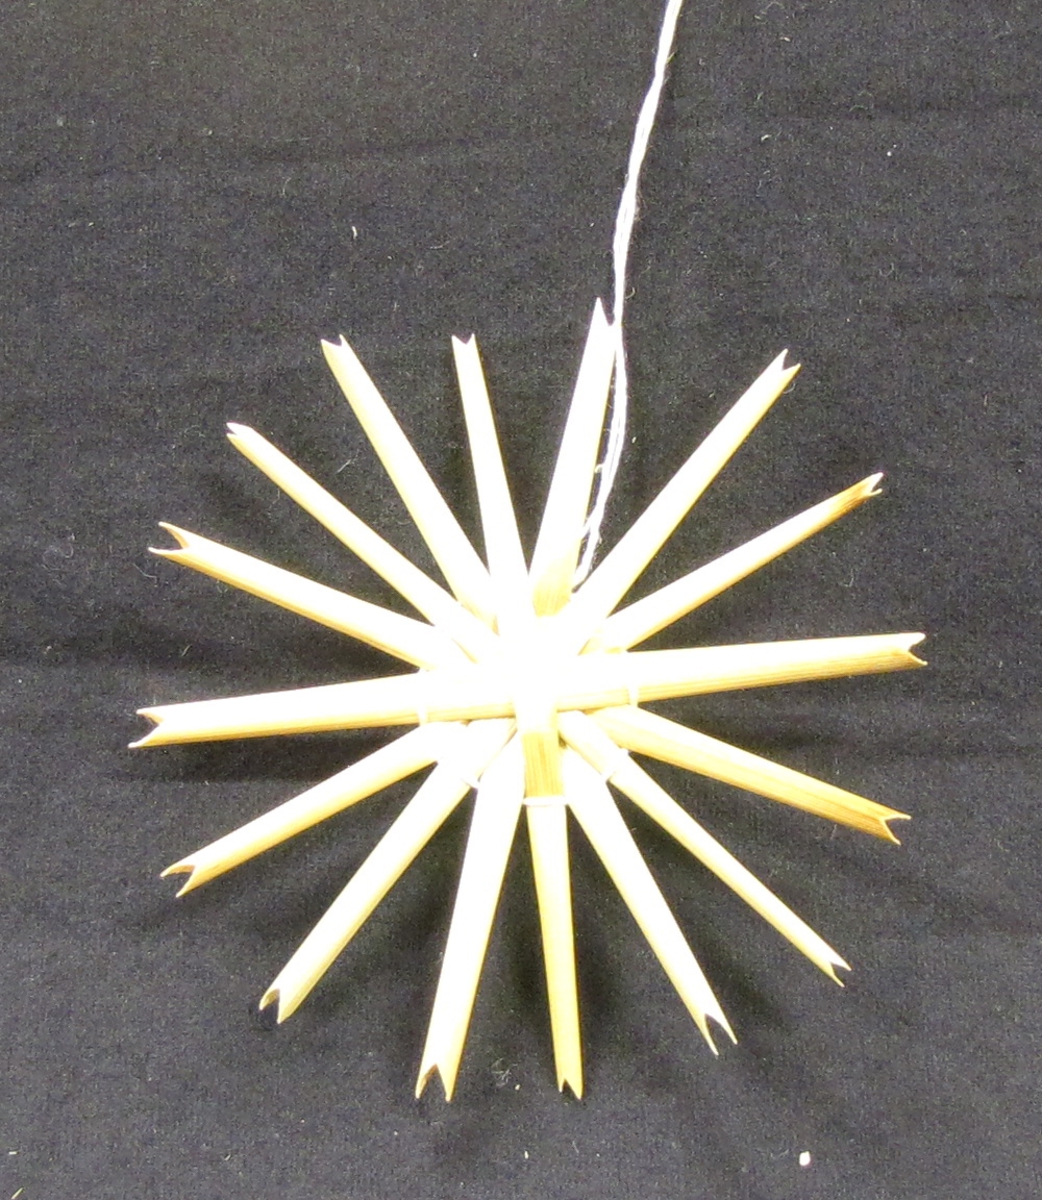 Stjärna i enkel knytteknik i halm.

Tillverkad 1984 för halmdokumentationen.